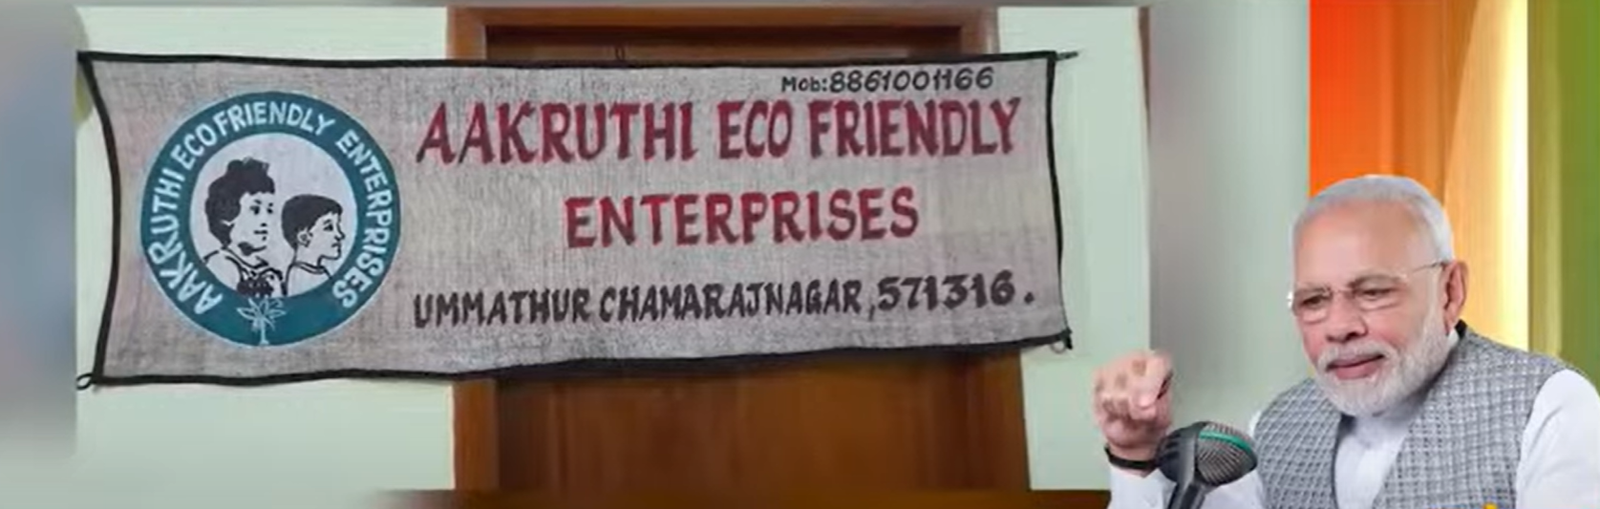 Bengaluru| MTech graduate wins PM Modi's praise for eco-friendly initiative